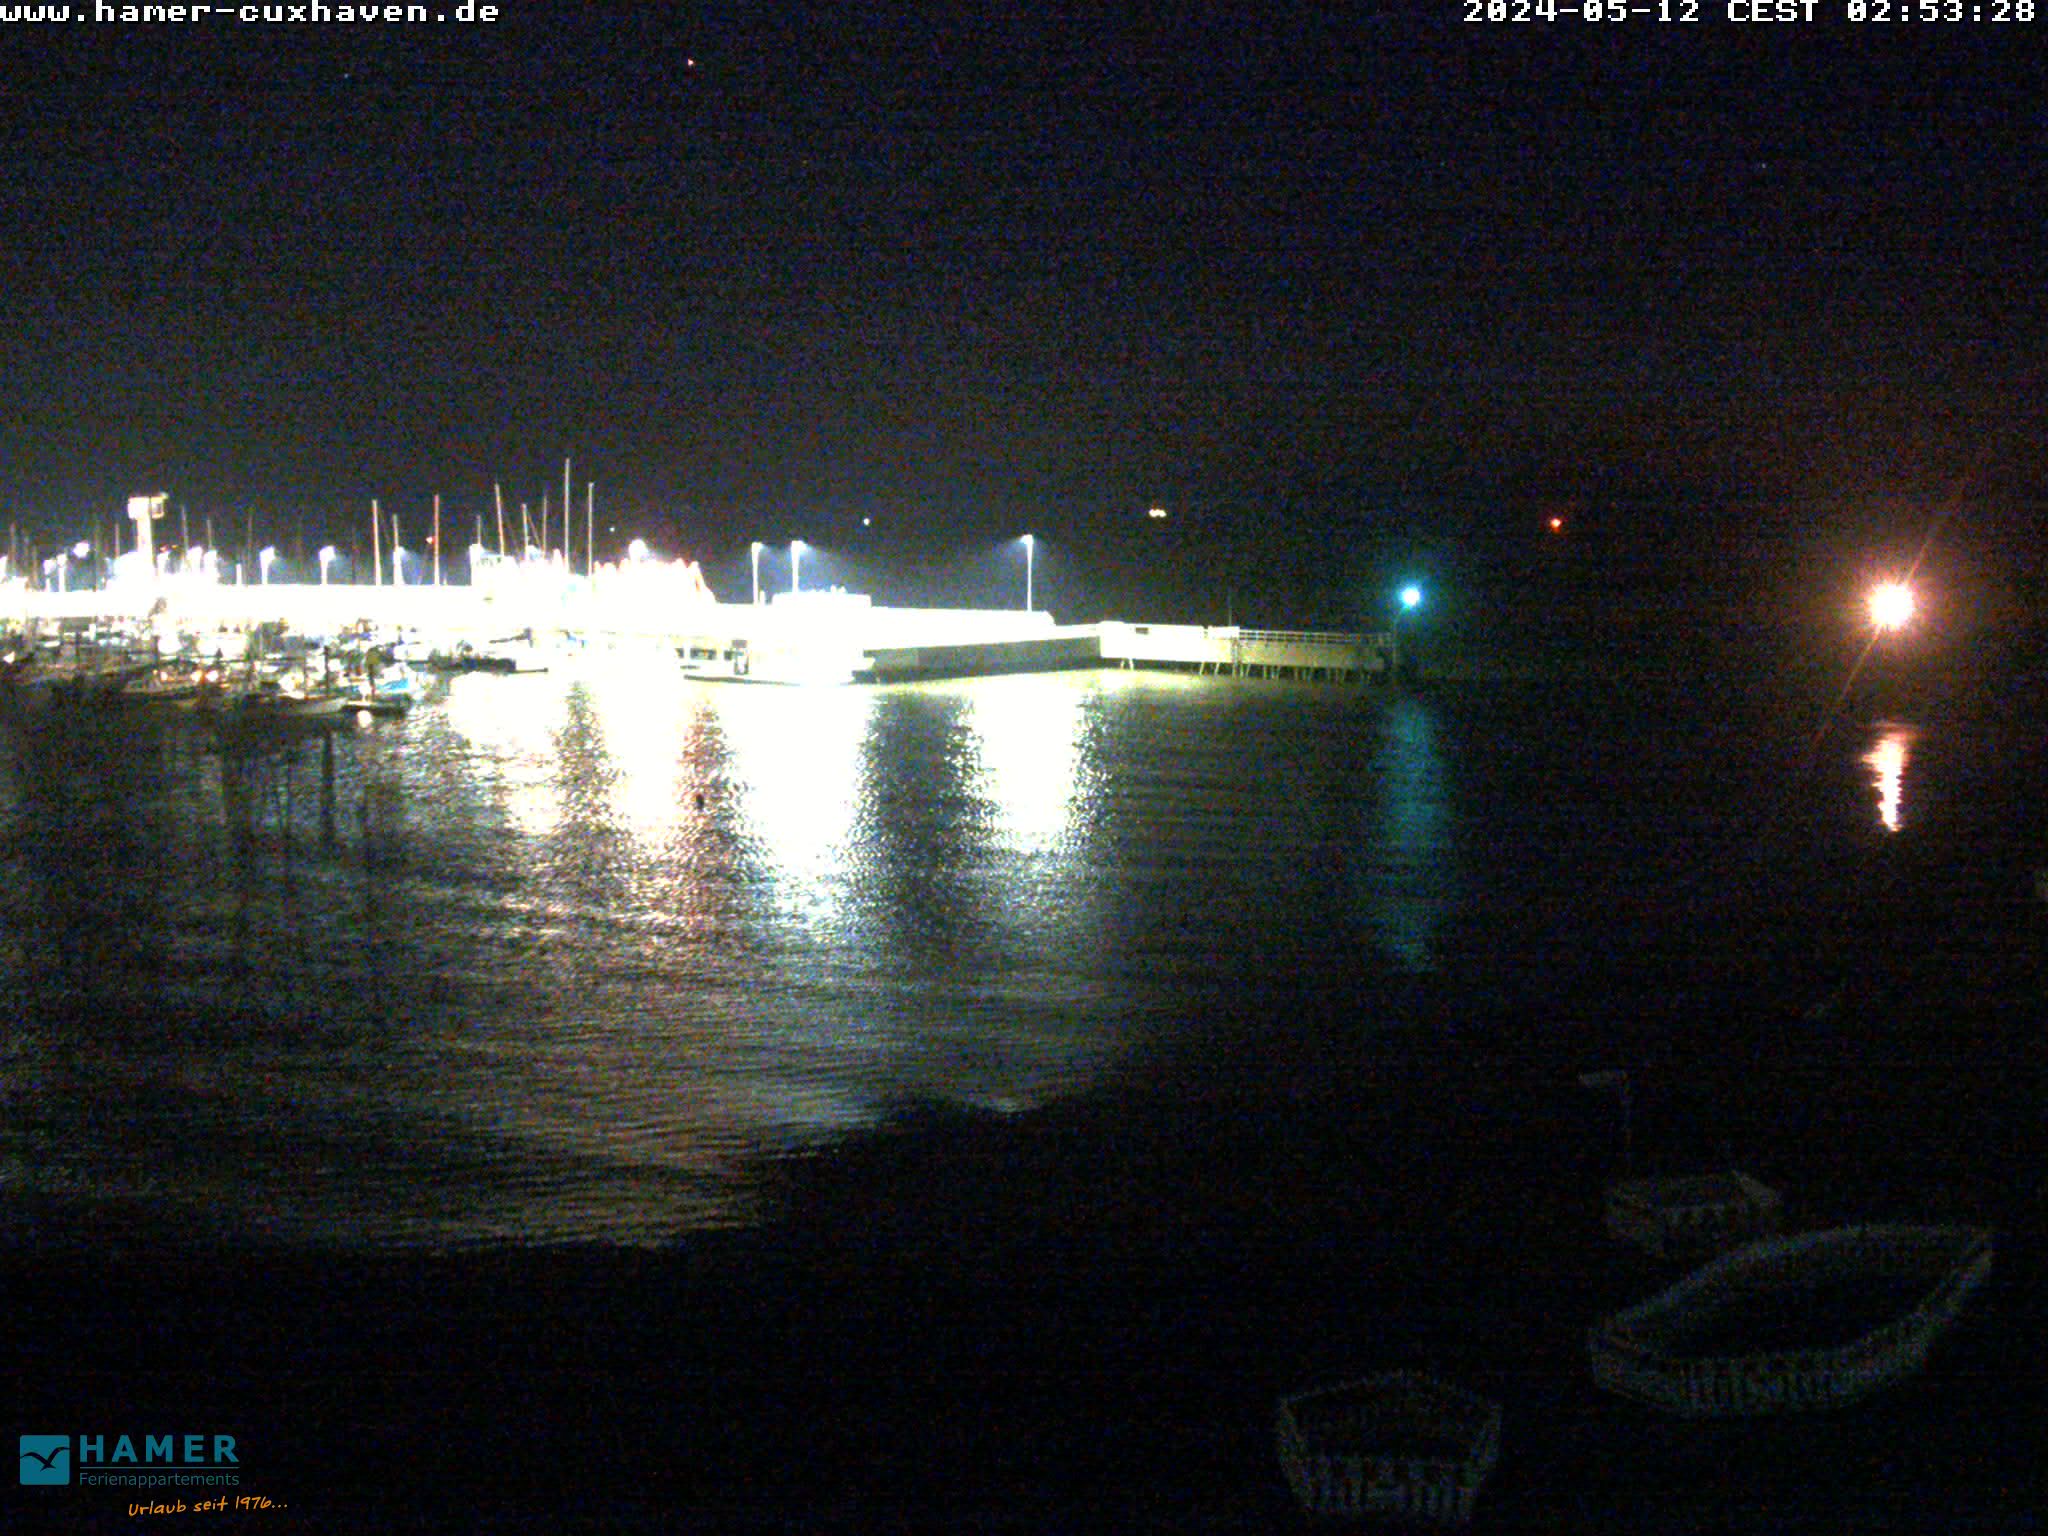 Cuxhaven Je. 02:55